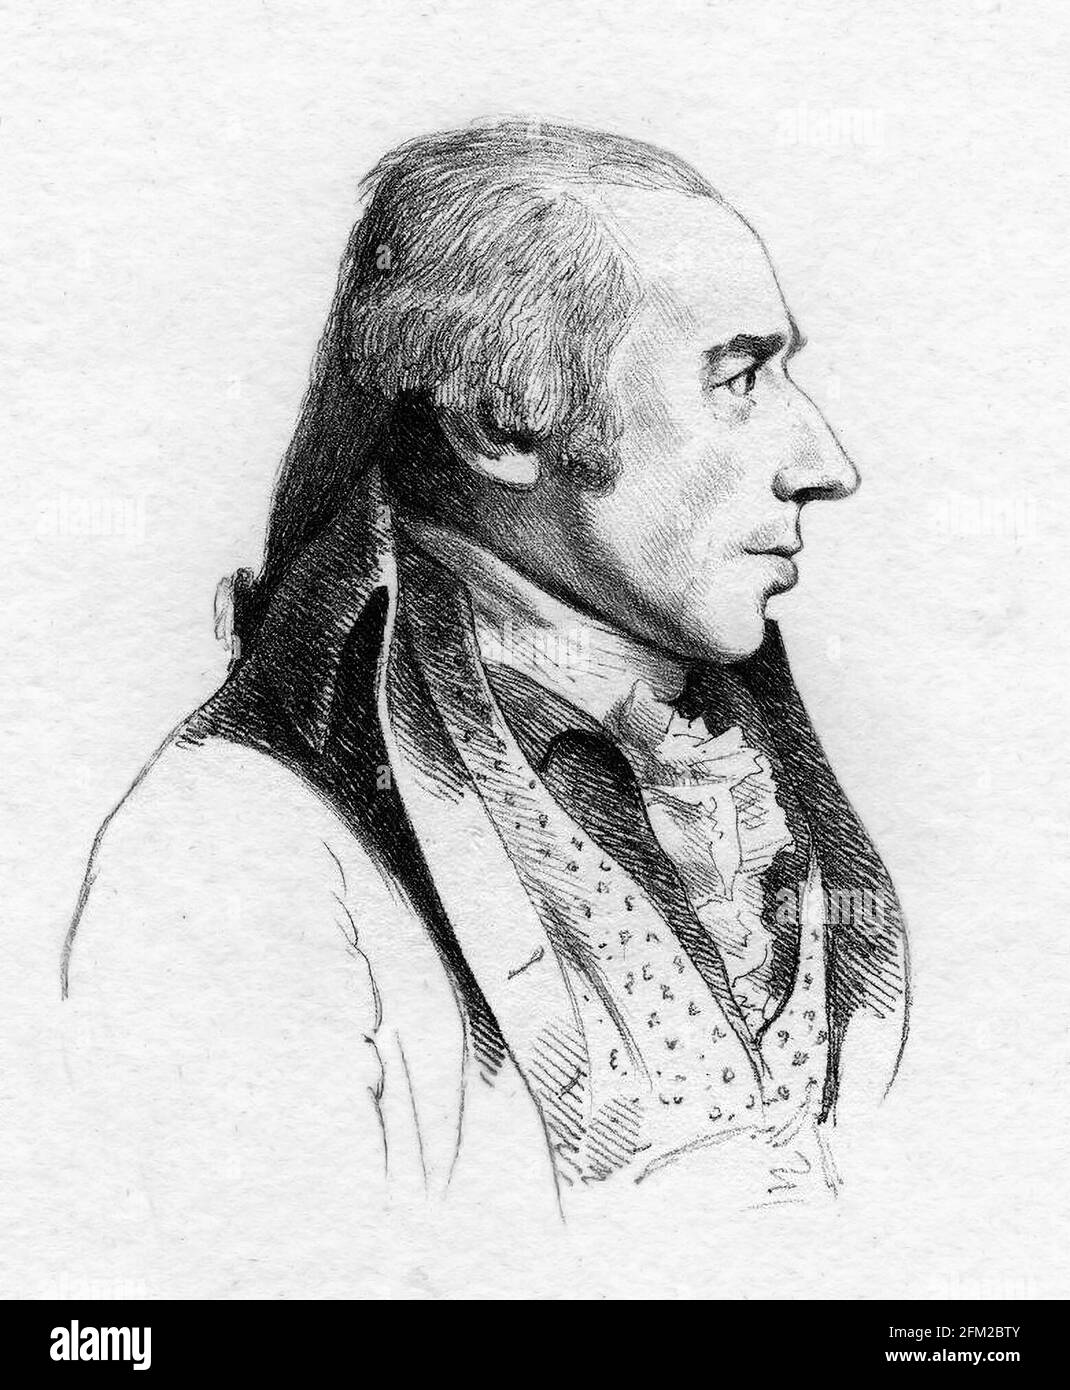 William Hodges. Portrait du peintre anglais William Hodges (1744-1797) par William Daniel après George Dance, gravure sur sol mou, 1793 Banque D'Images